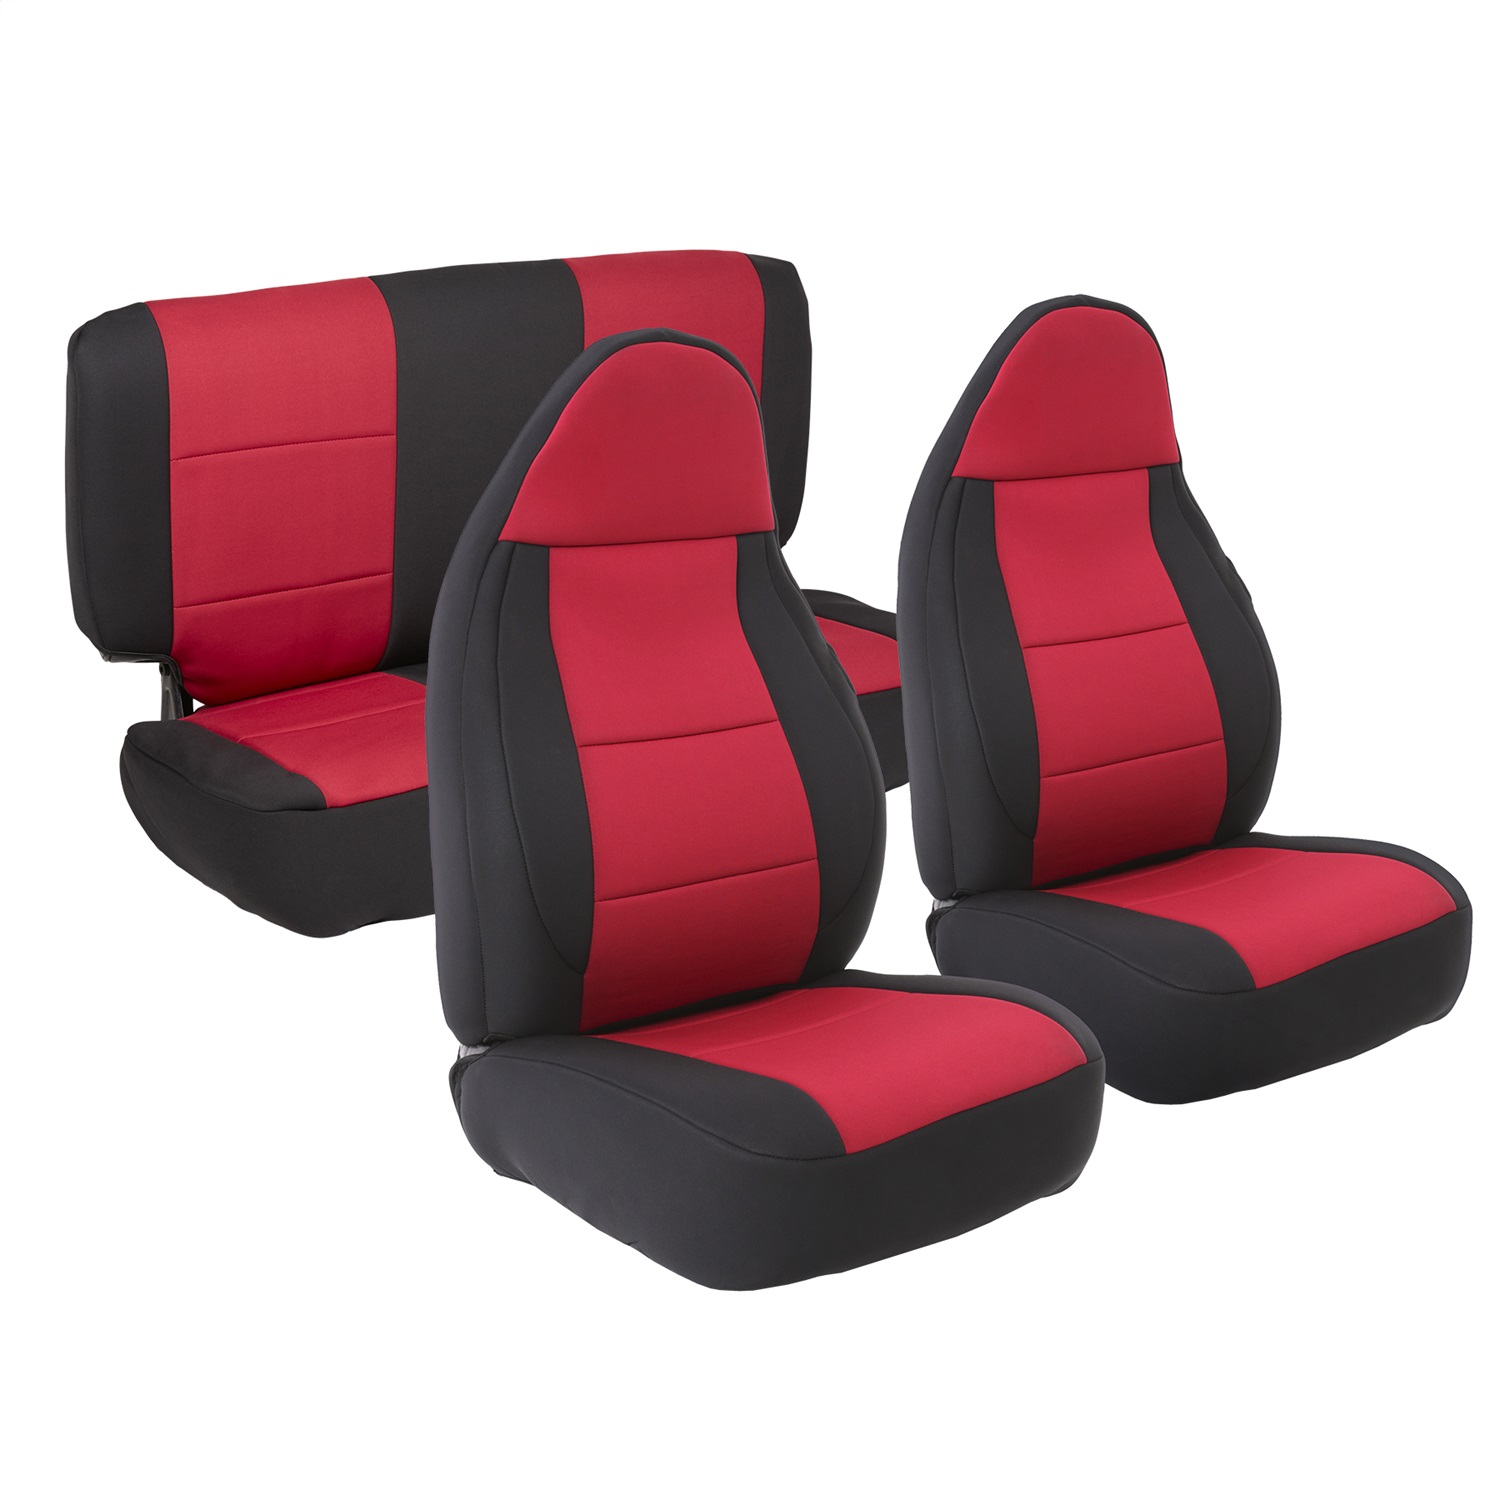 Smittybilt 471230 Neoprene Seat Cover Fits 97-02 Wrangler (TJ)